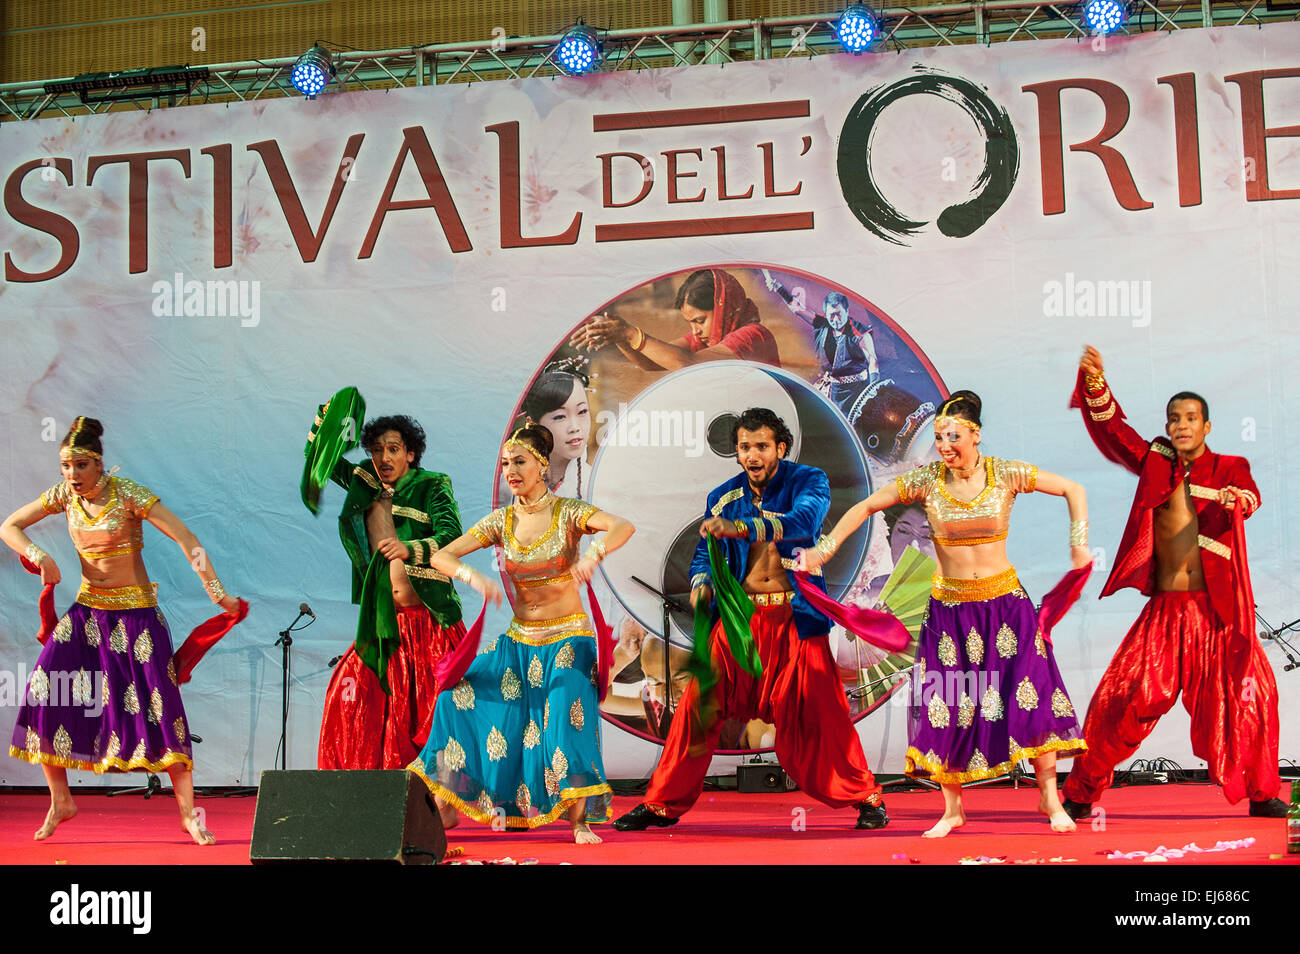 Turin, Italien. 22. März 2015. Lingotto fair "Festival dell'Oriente" vom 20. bis 22. März 2015 und vom 27. bis 30. März 2015 - 20. März 2015 Indien Sunny Singh Bollywood Dance Company Credit: wirklich Easy Star/Alamy Live News Stockfoto